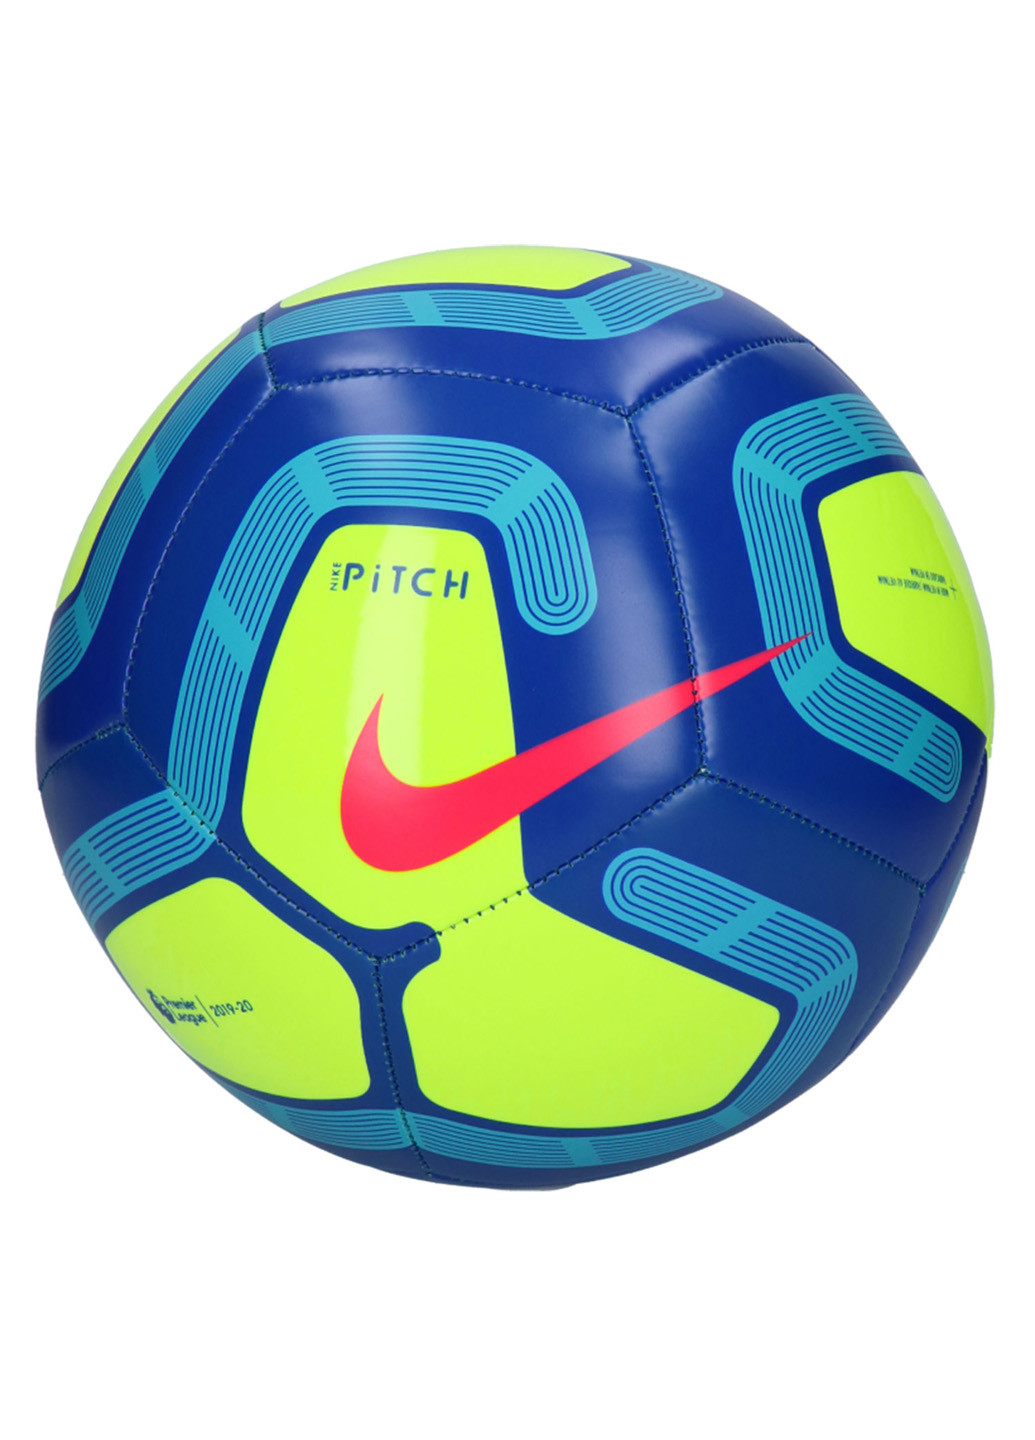 Футбольний м'яч №5 Nike (190260921)